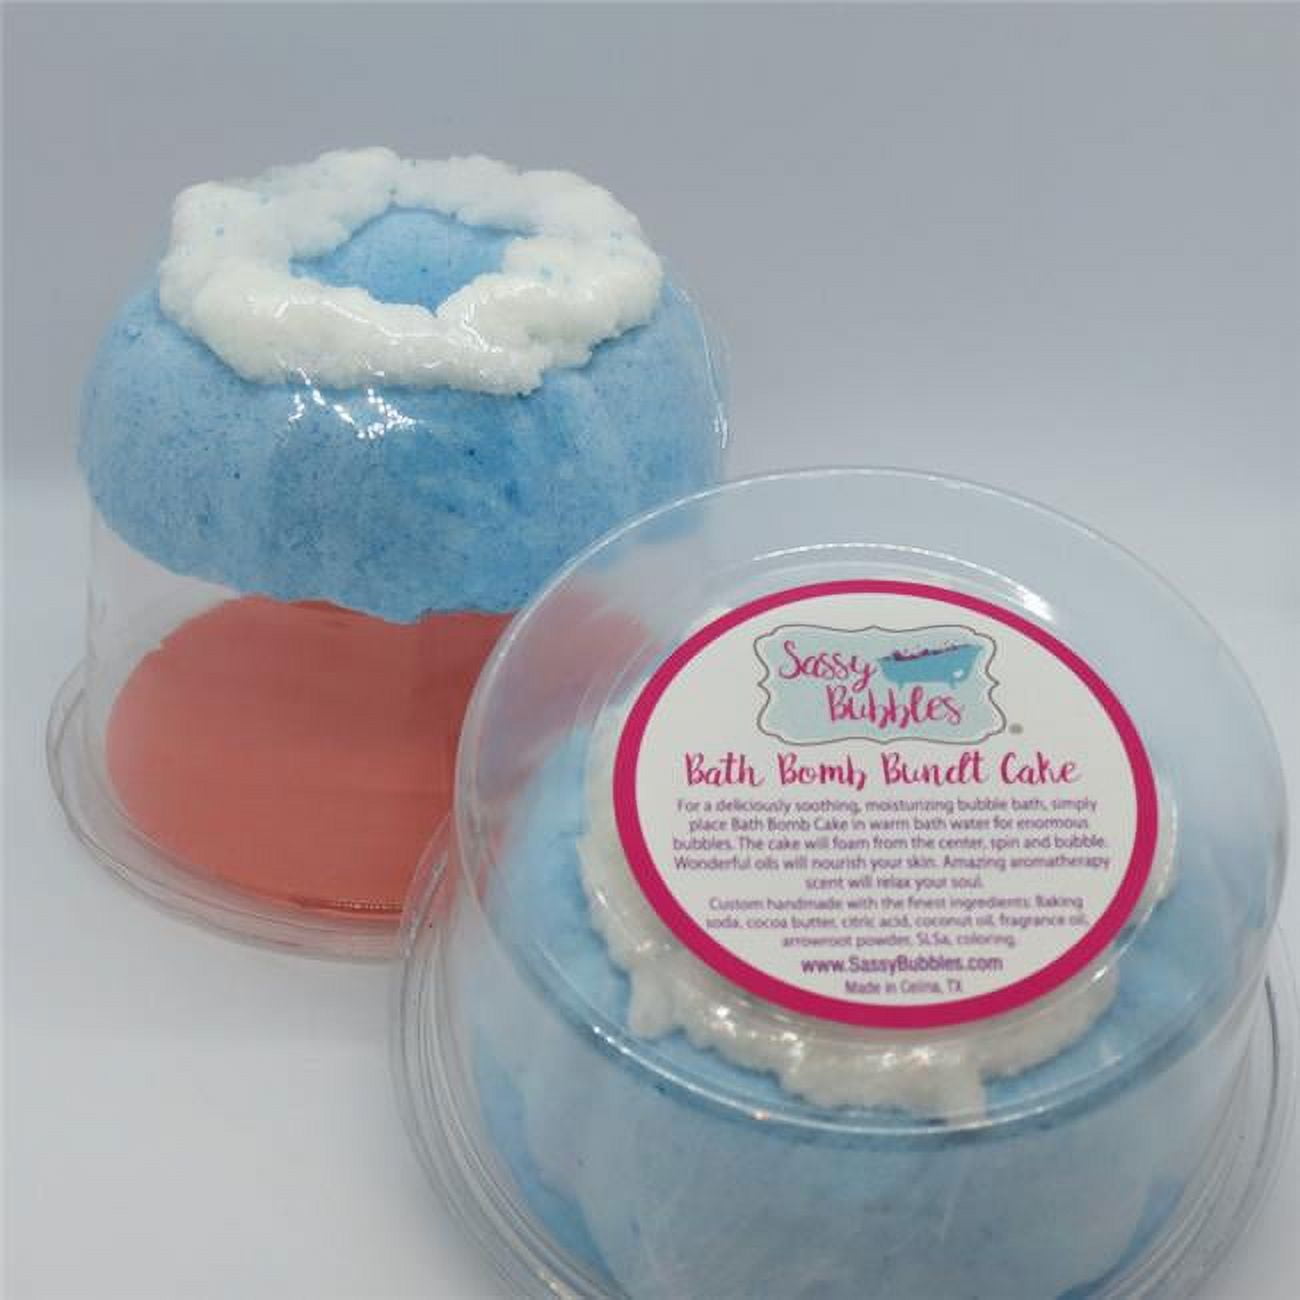 Sassy Bubbles OceanBundt Bath Bomb Bundt Cake - Ocean Waves